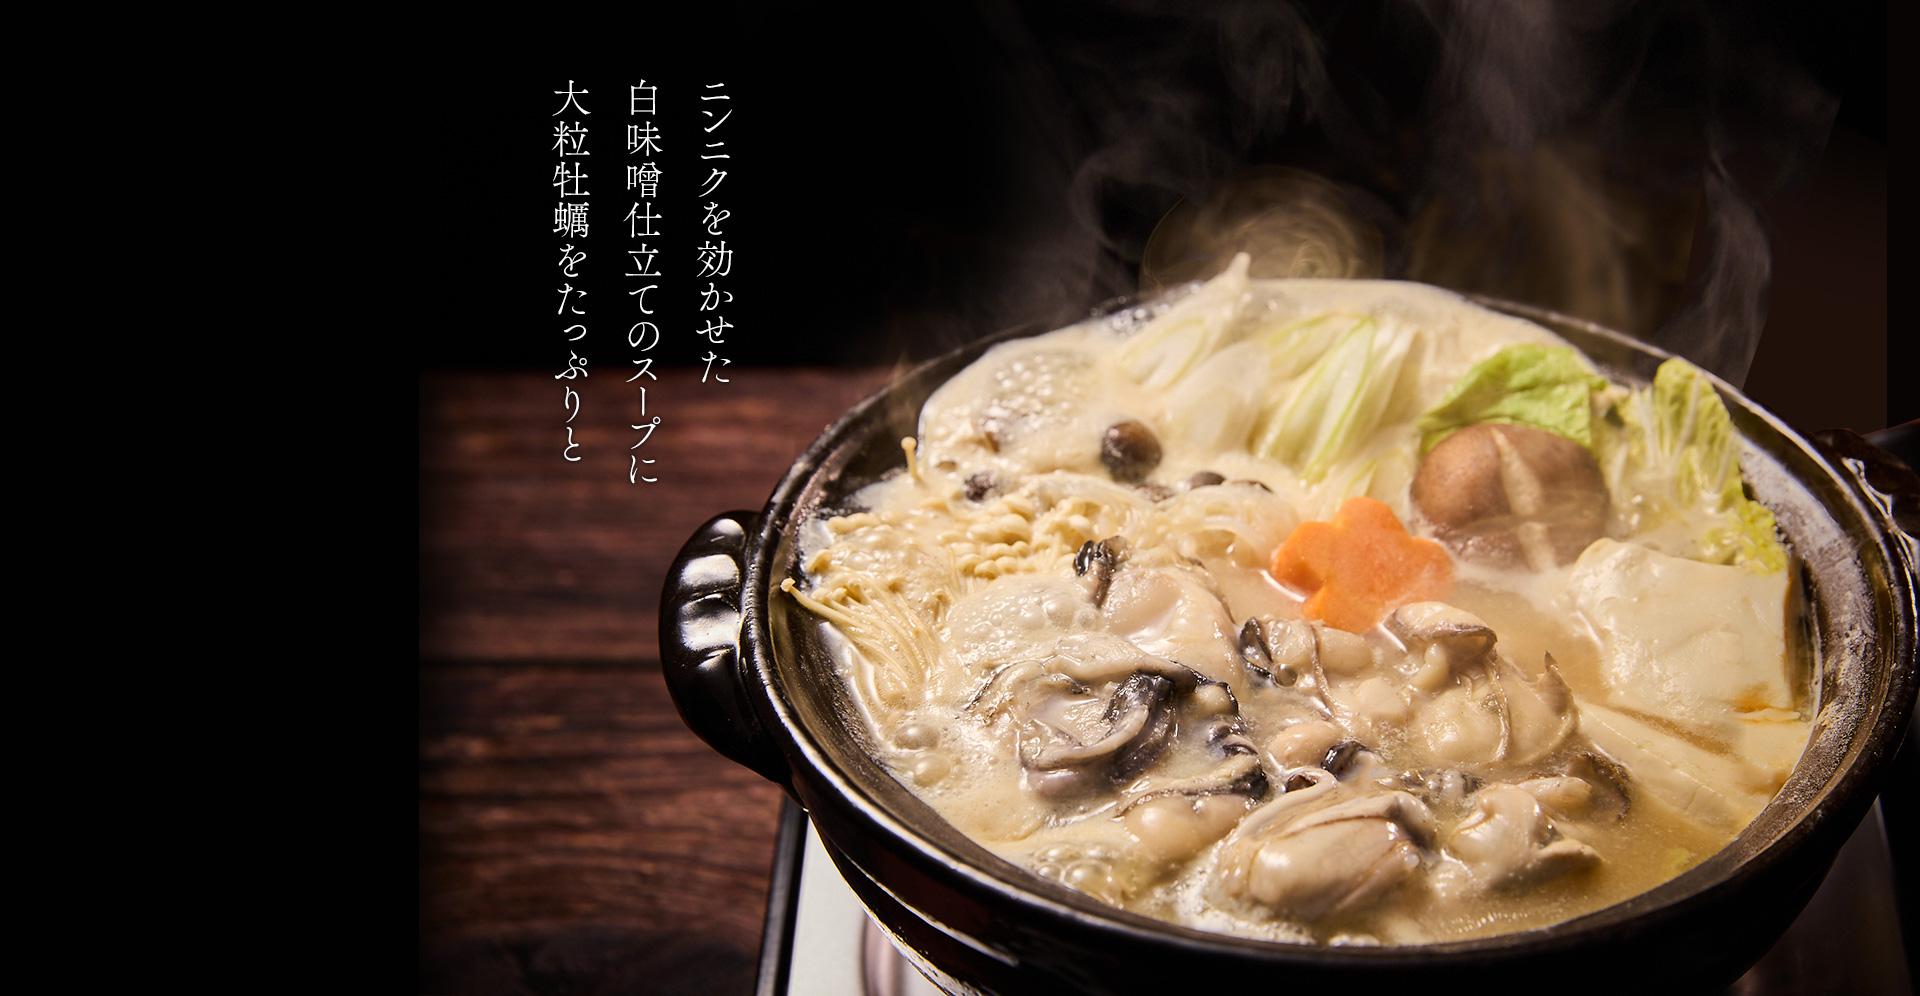 ニンニクを効かせた白味噌仕立てのスープに広島県産の大粒牡蛎をたっぷりと